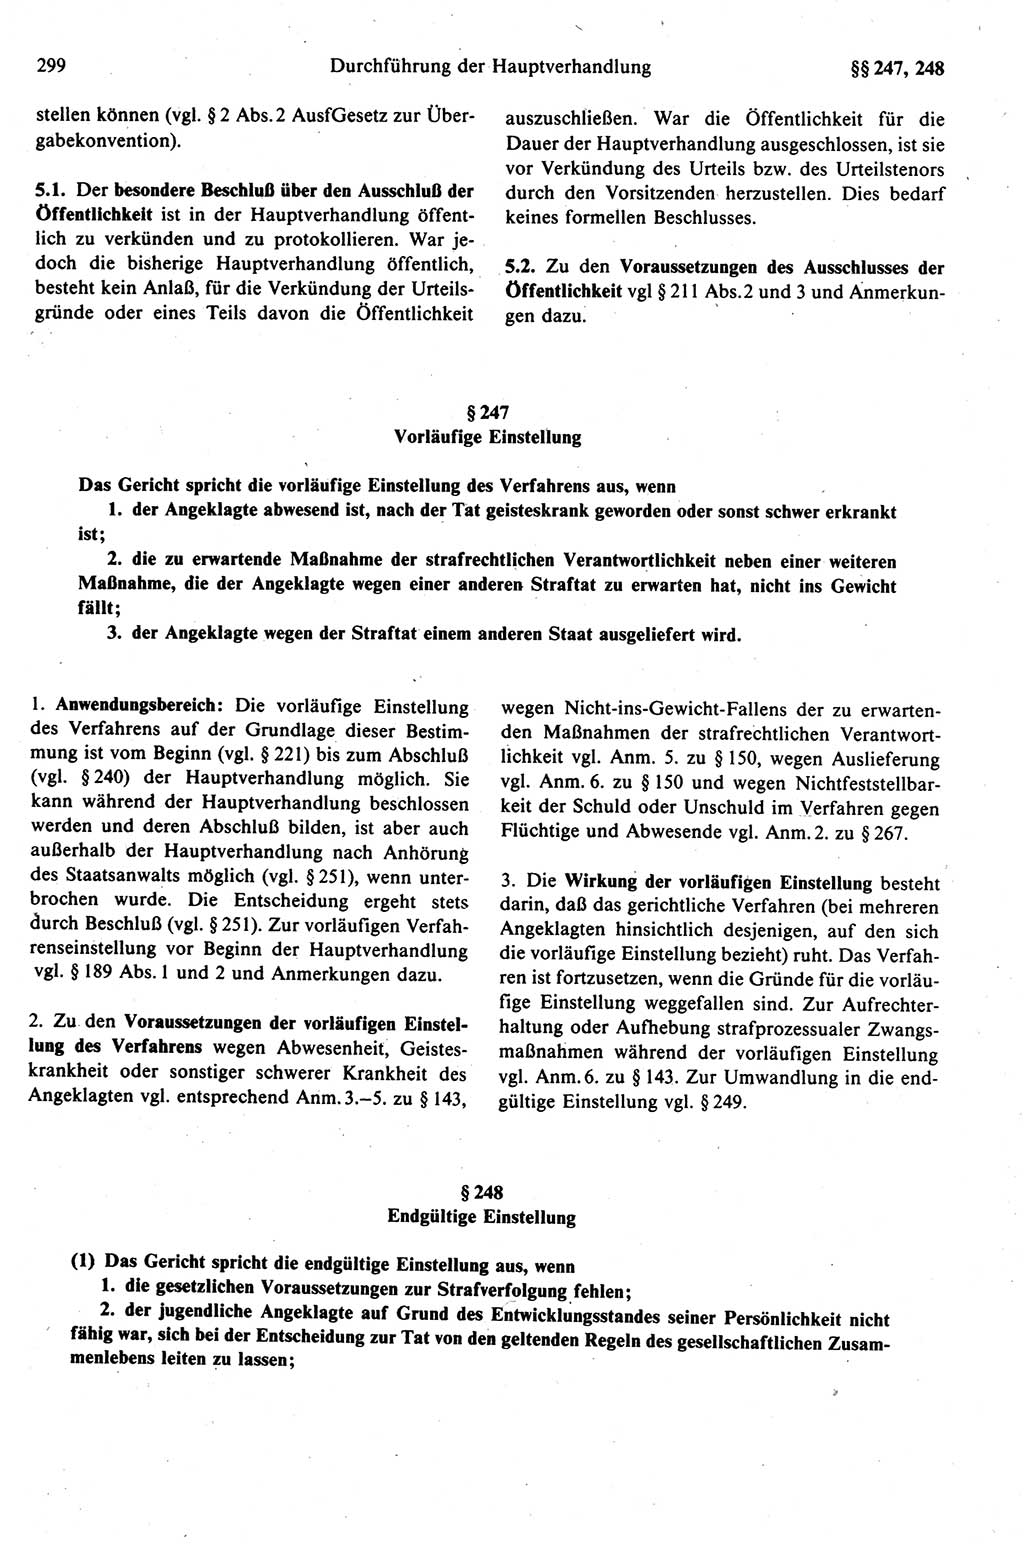 Strafprozeßrecht der DDR (Deutsche Demokratische Republik), Kommentar zur Strafprozeßordnung (StPO) 1989, Seite 299 (Strafprozeßr. DDR Komm. StPO 1989, S. 299)